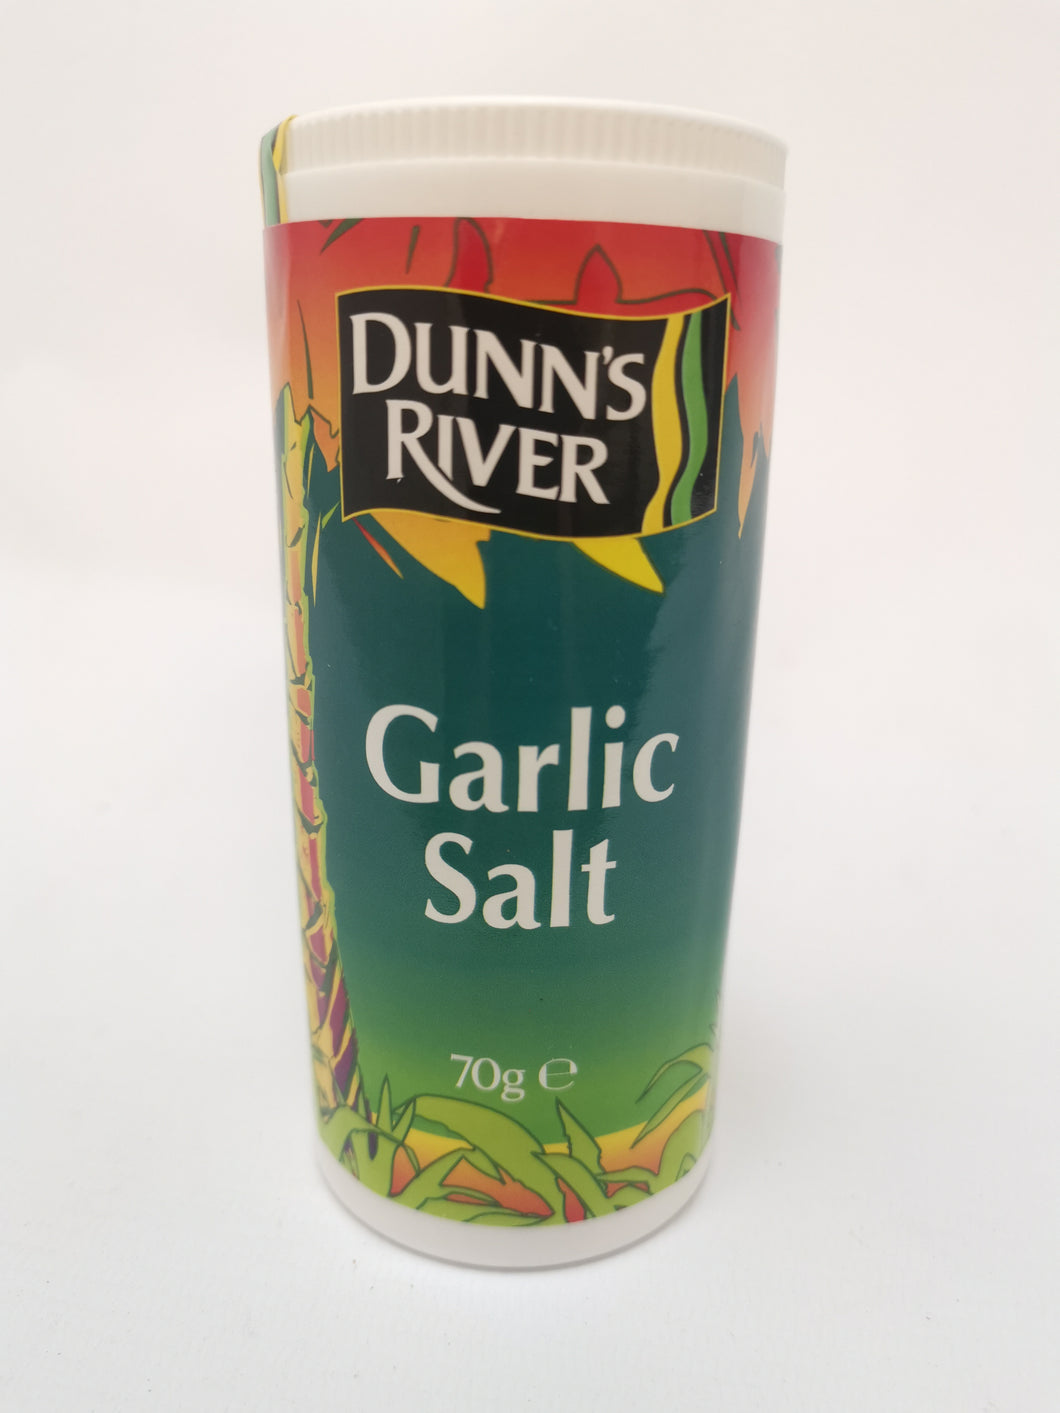 Dunn's River Garlic Salt 70g